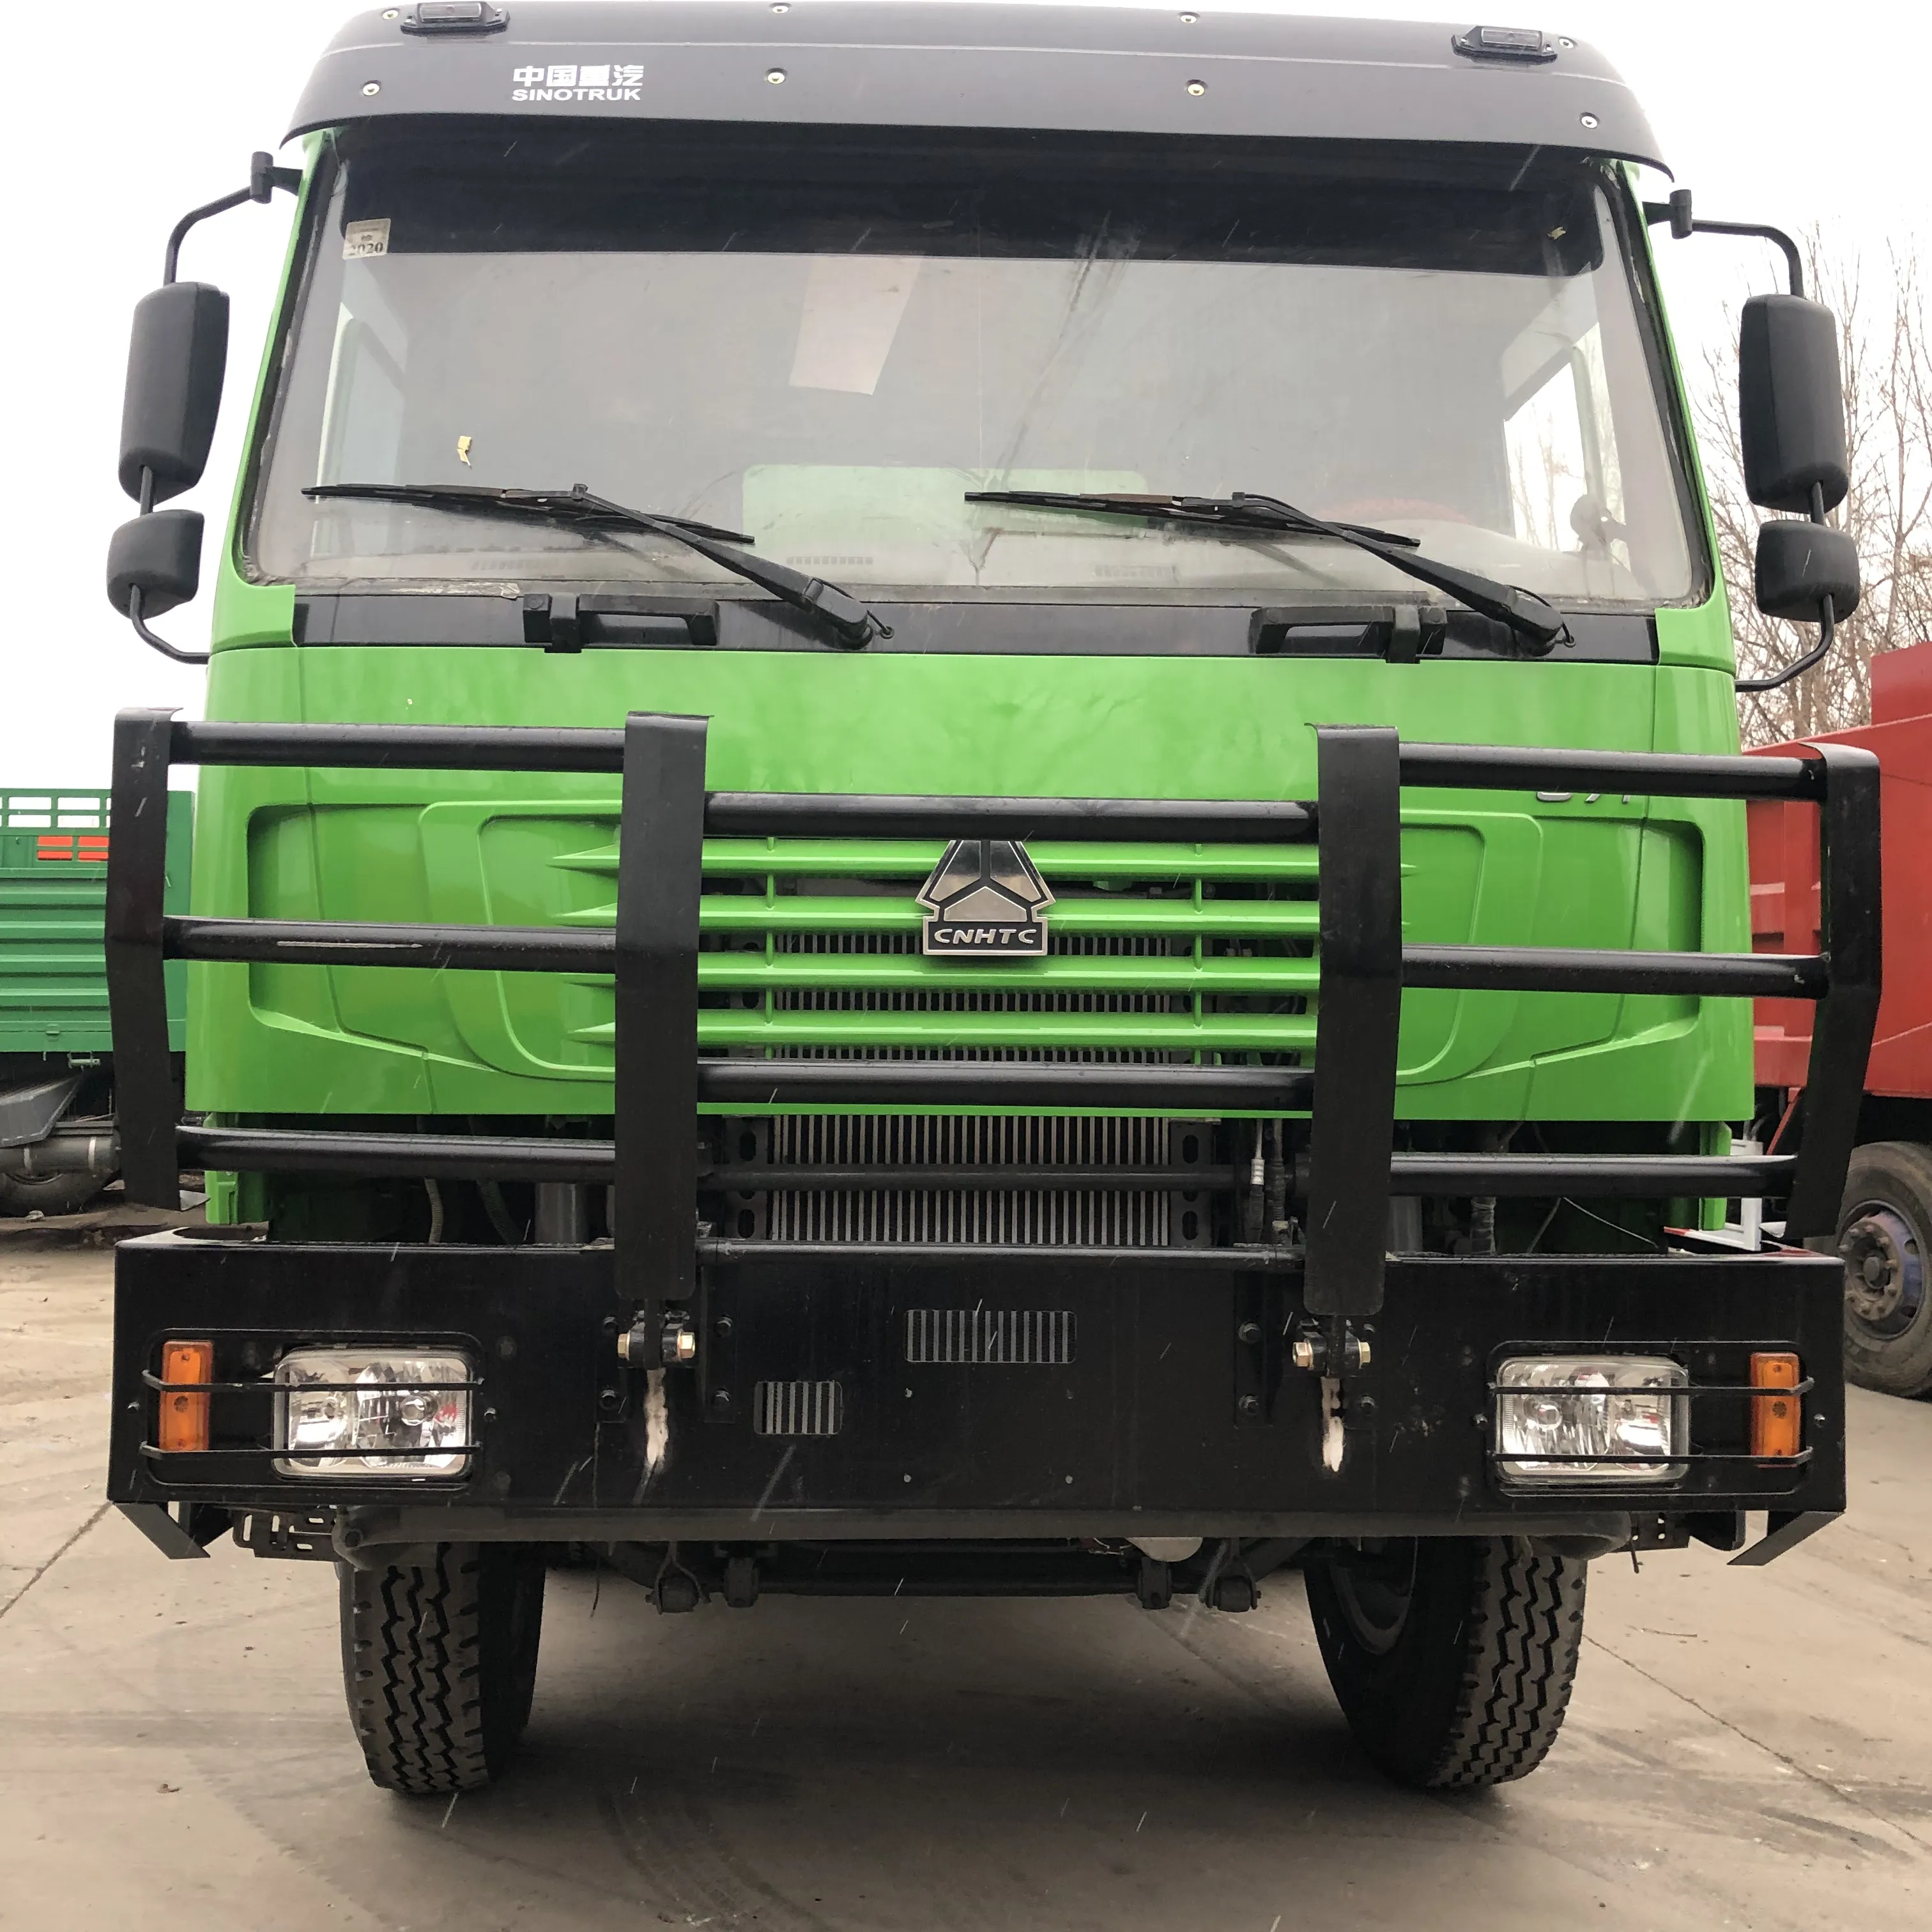 Kullanılan sinotruck HOWO hafif kargo kutusu kamyon 371hp ikinci kamyon with12 lastikler euro2 düşük fiyat ve mükemmel durumda çin'de yapılan